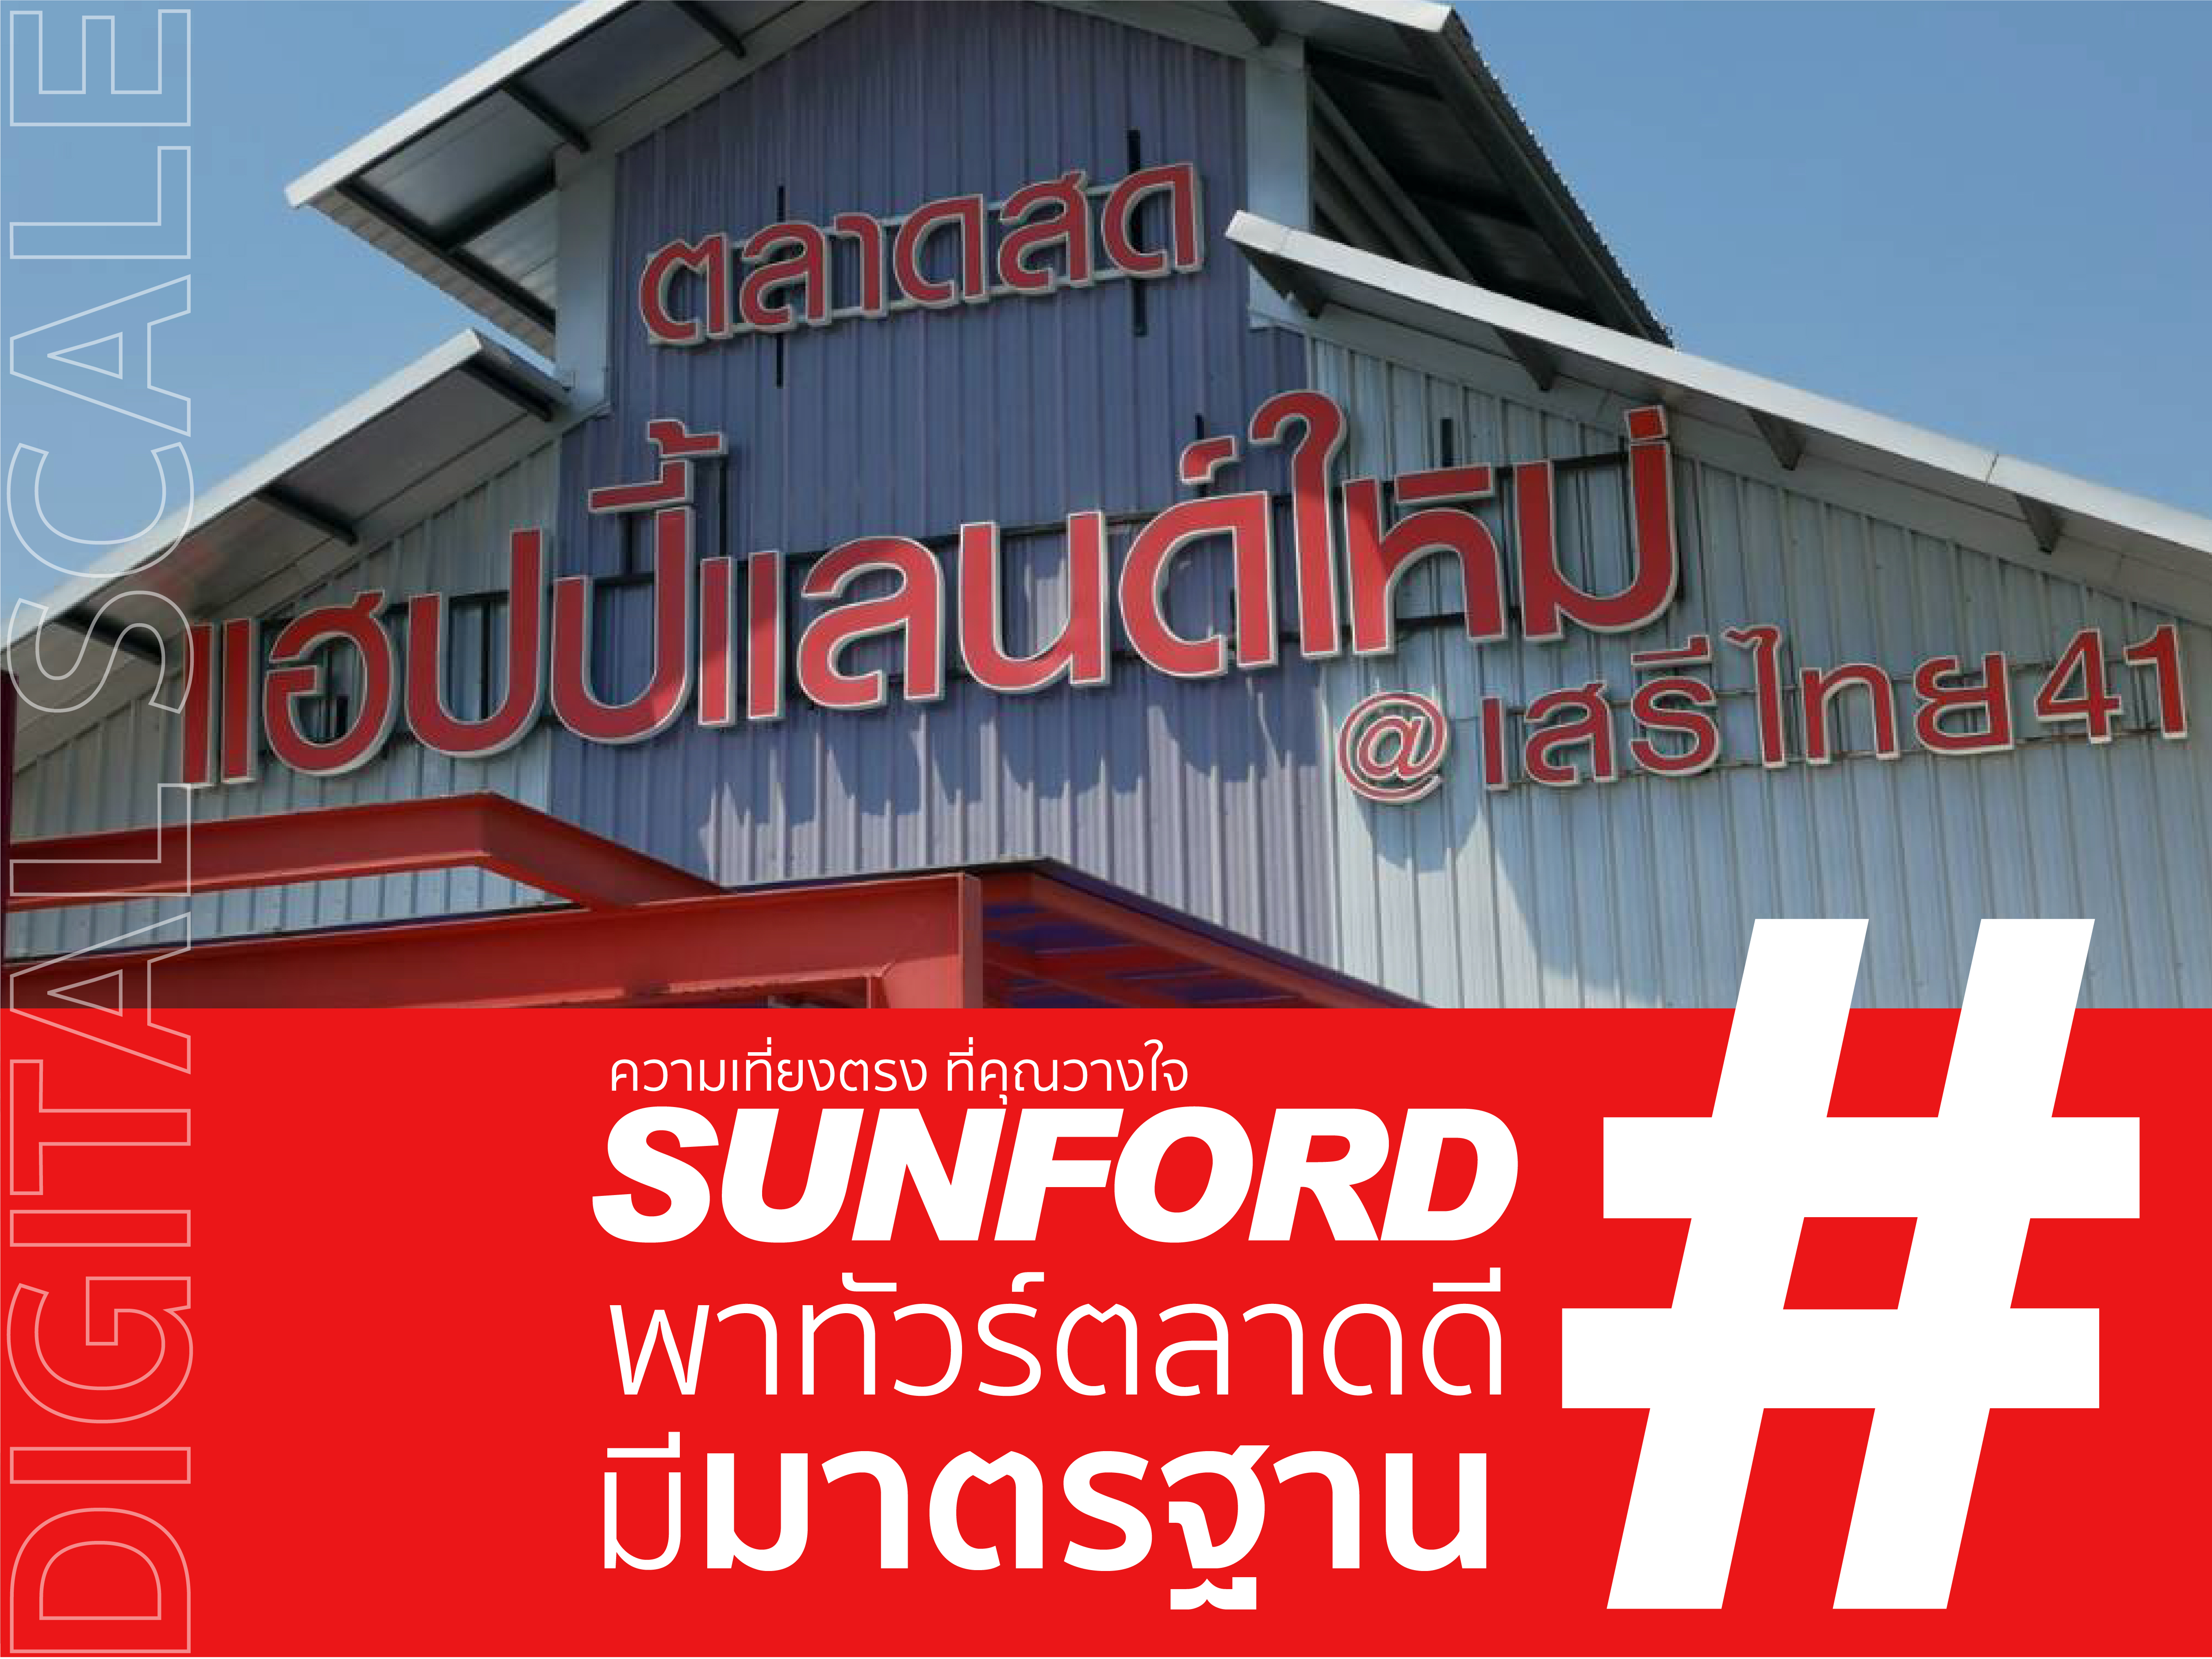 ซันฟอร์ด พาทัวร์ตลาดดีมีมาตรฐาน "ตลาดแฮปปี้แลนด์ เสรีไทย"